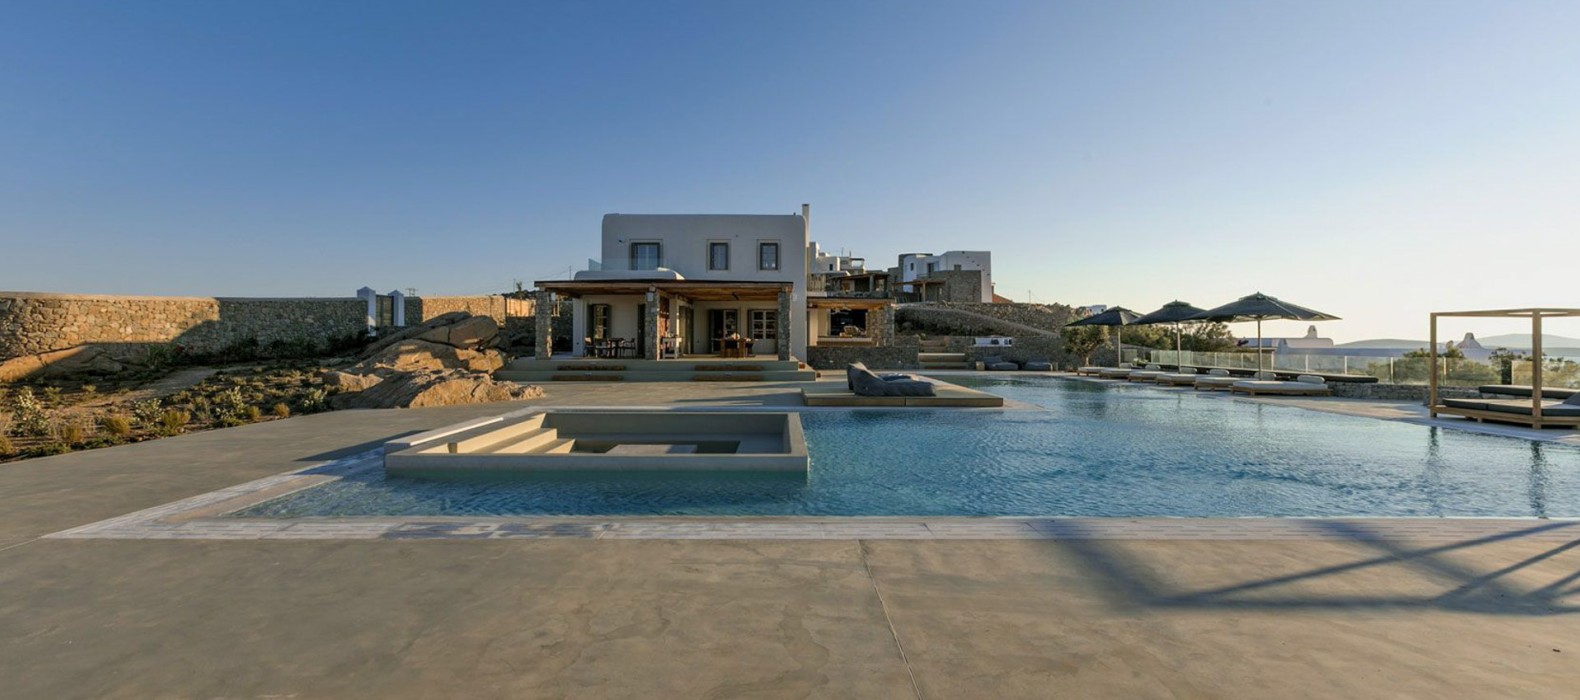 Exterior pool area of Villa Galia in Mykonos